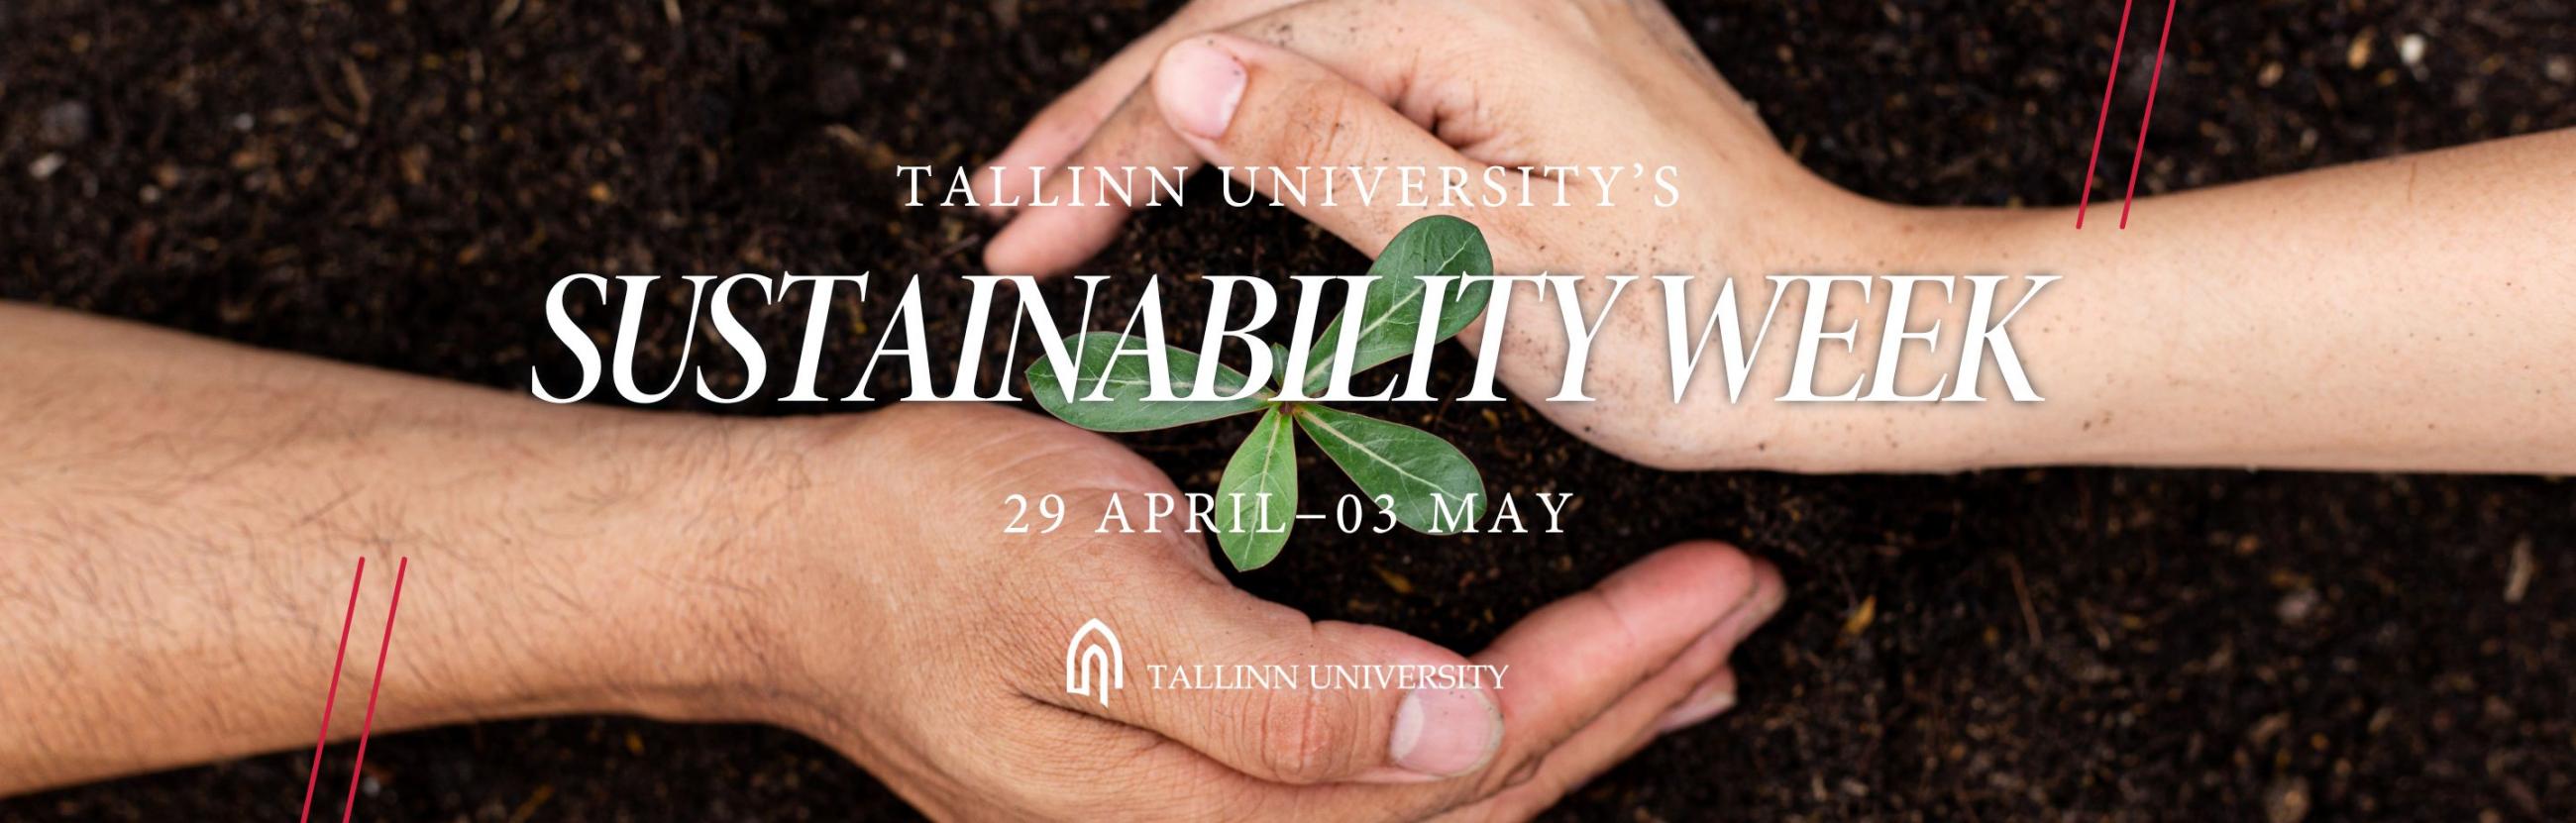 Sustainability week